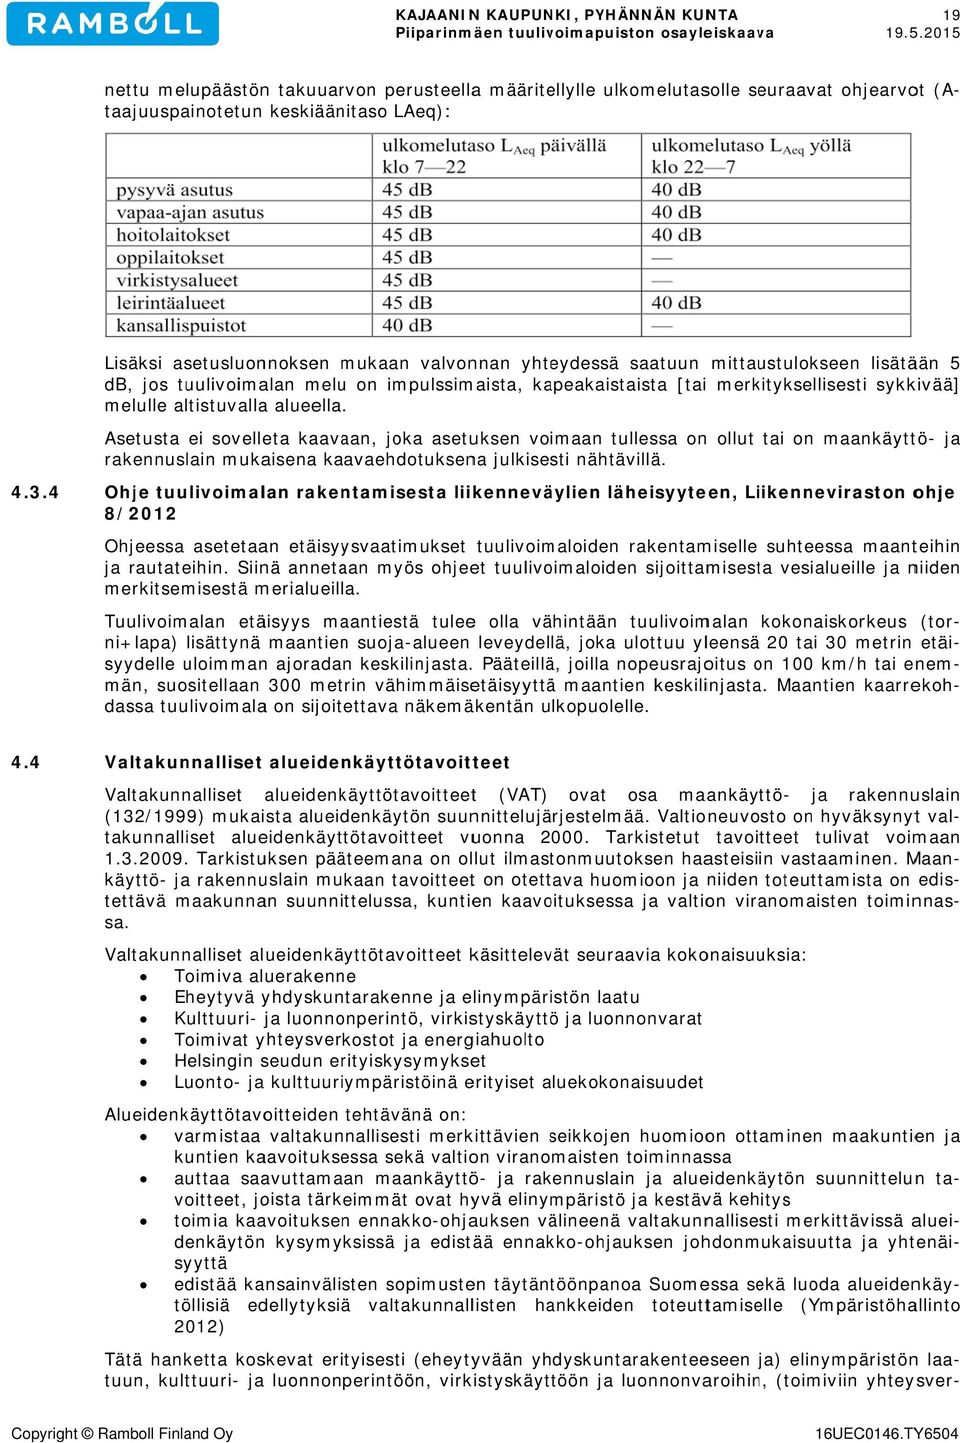 4 opyright Ramboll Finland Oy nettu melupäästön takuuarvon perusteella määritellylle ulkomelutasolle seuraavat ohjearvot (A taajuuspainotetun keskiäänitaso LAeq): Lisäksi asetusluonnoksen mukaan db